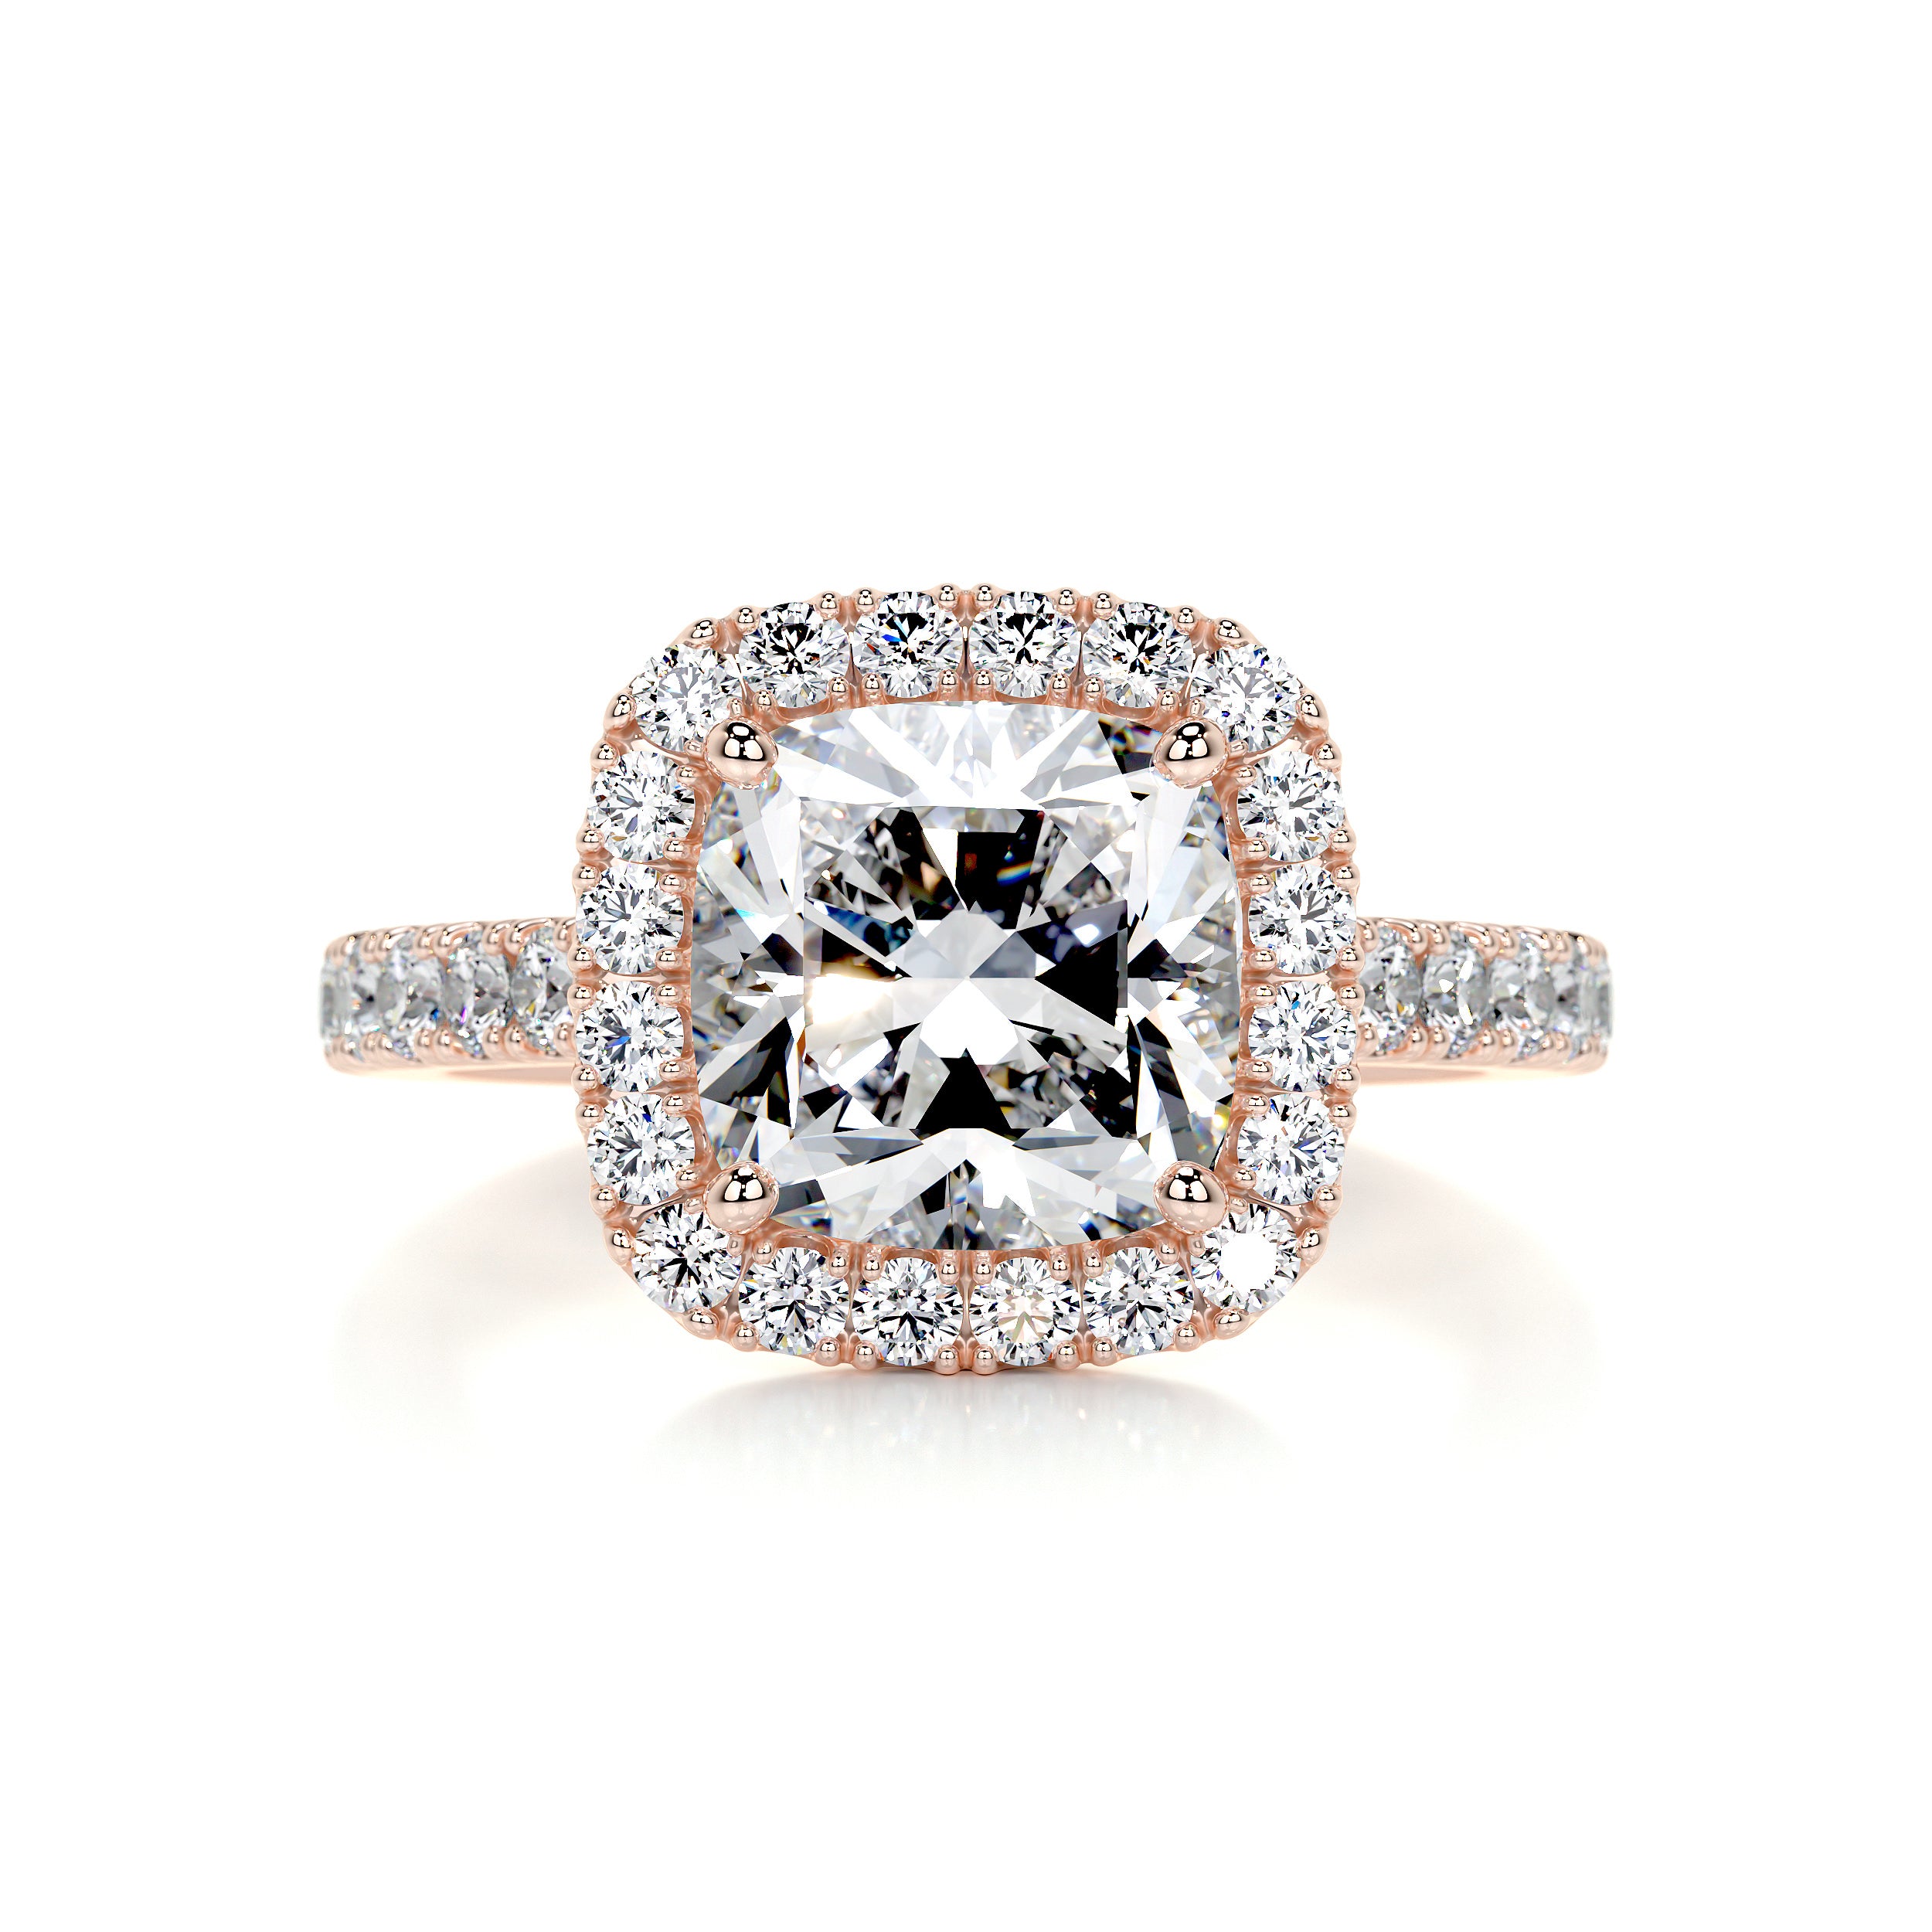 Celeste Diamond Engagement Ring -14K Rose Gold